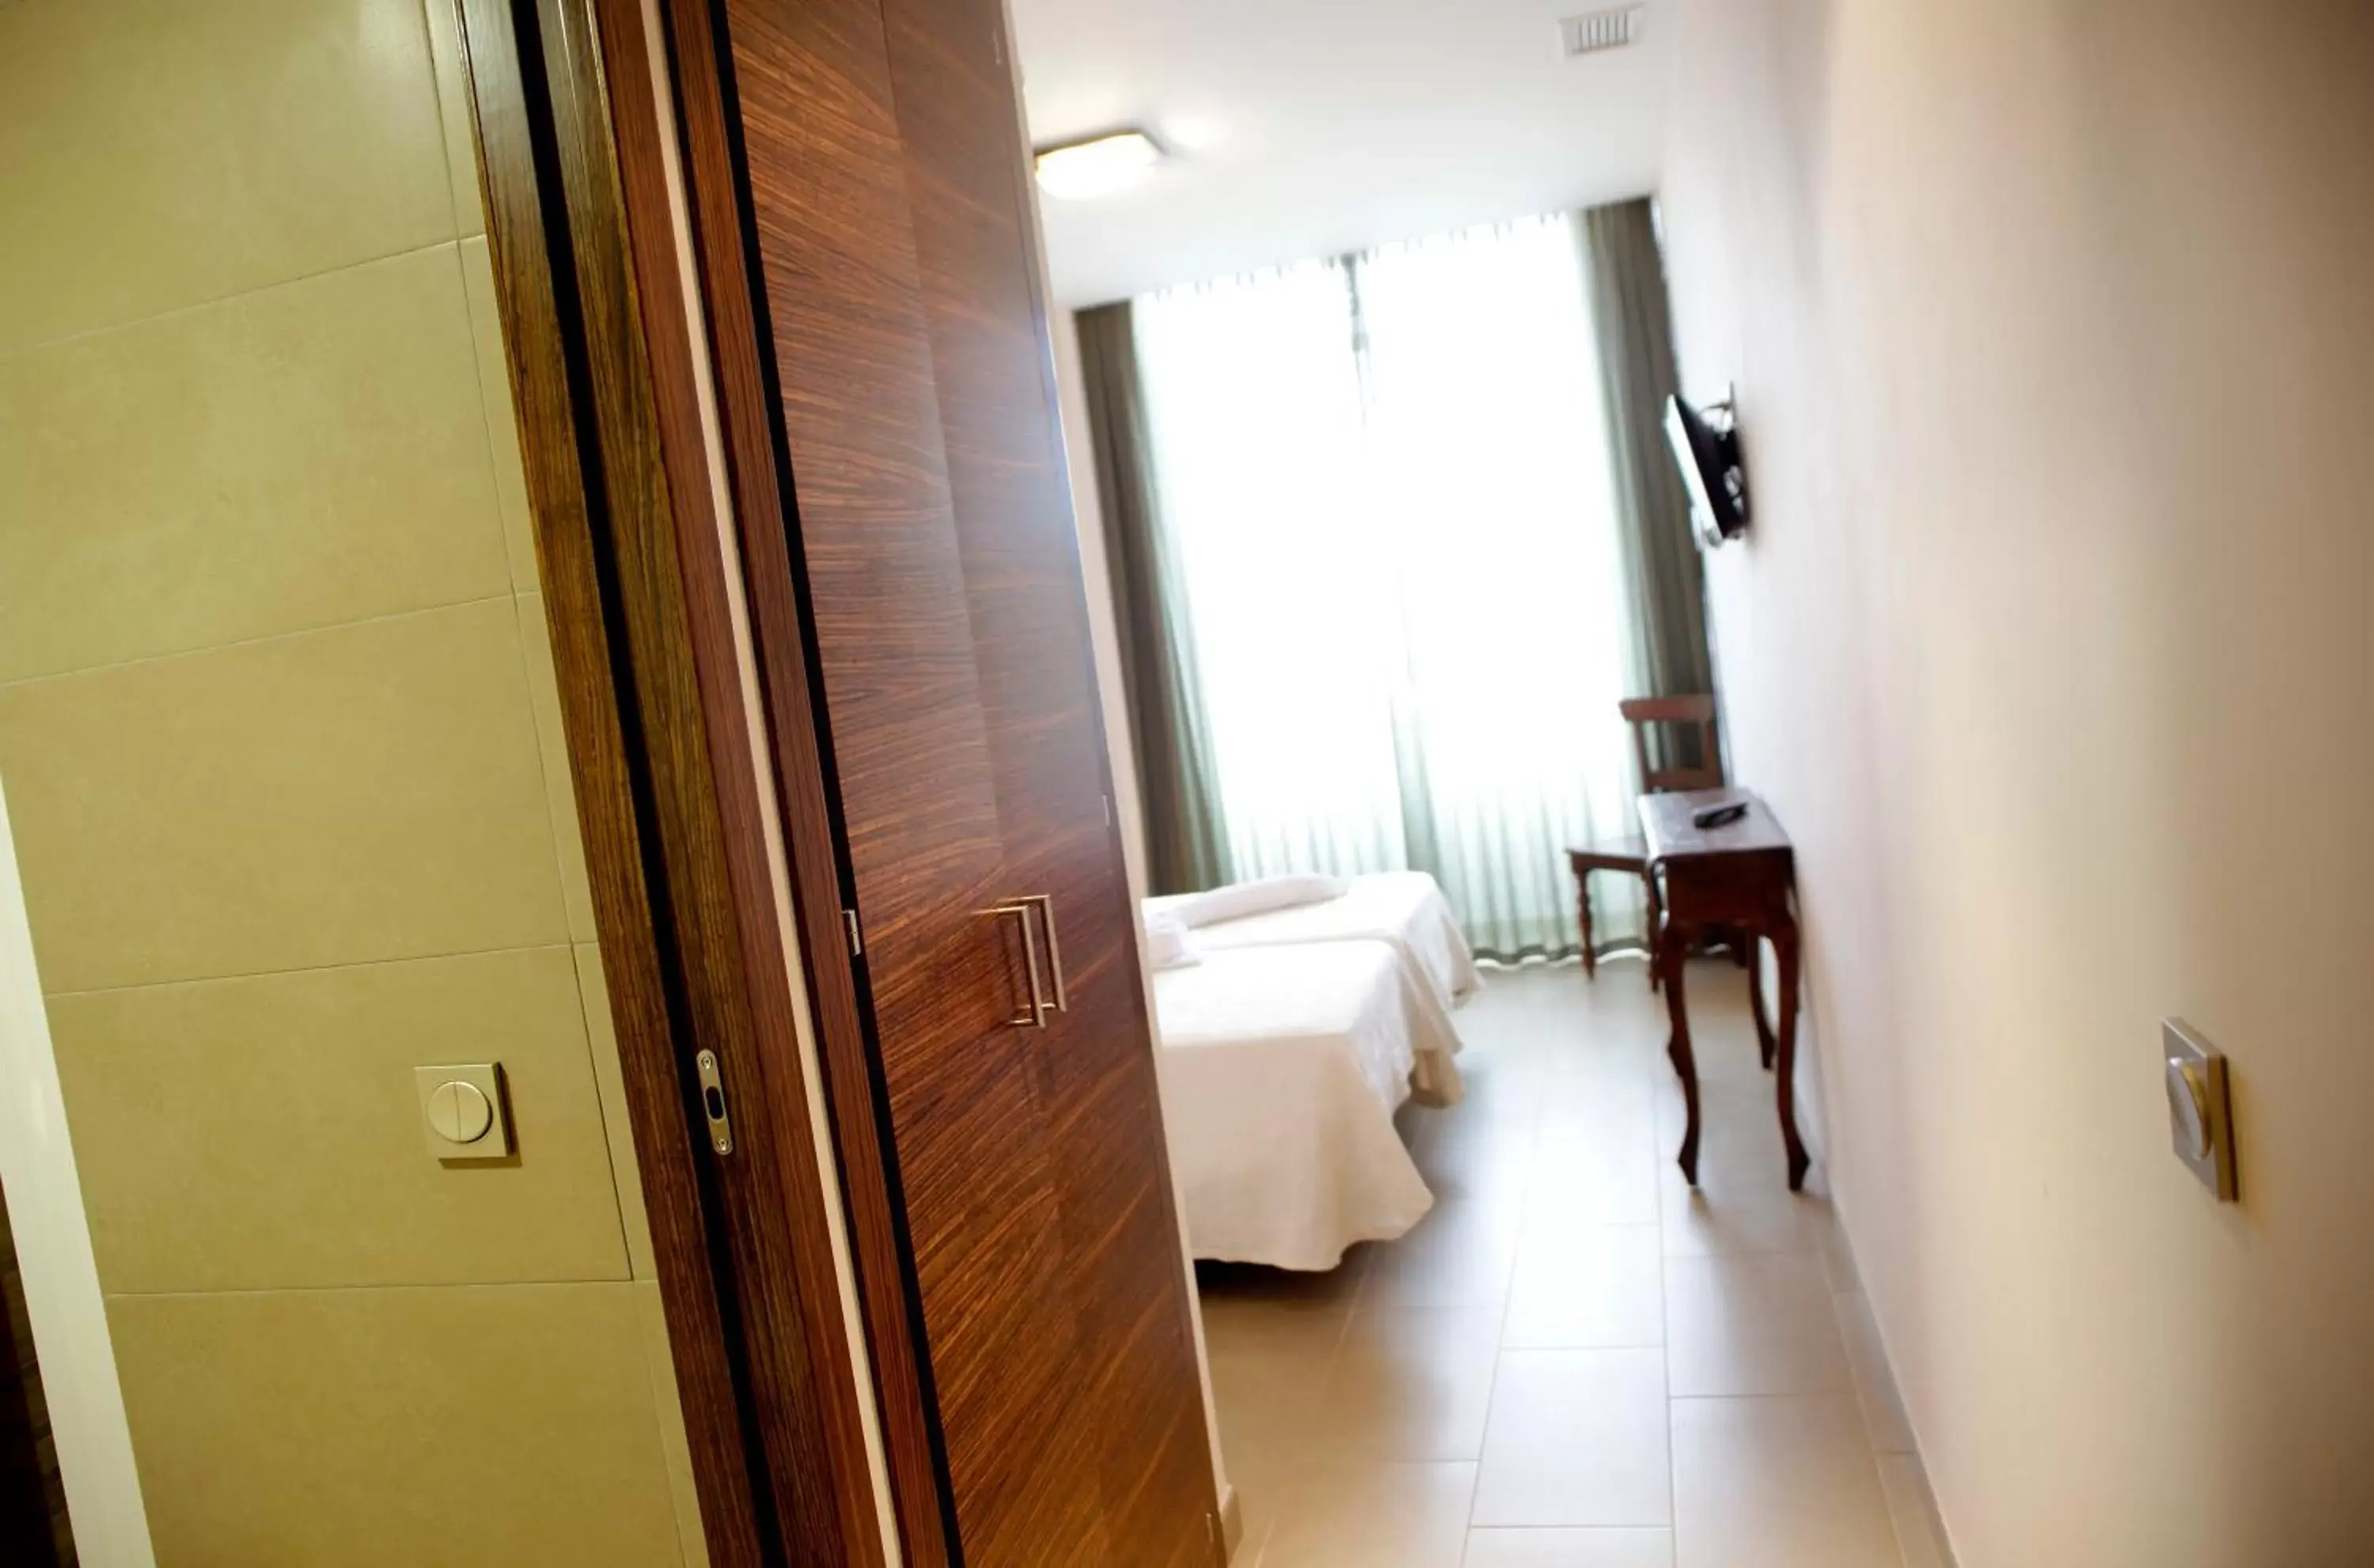 Bedroom, Bathroom in Hotel Ecologico Toral